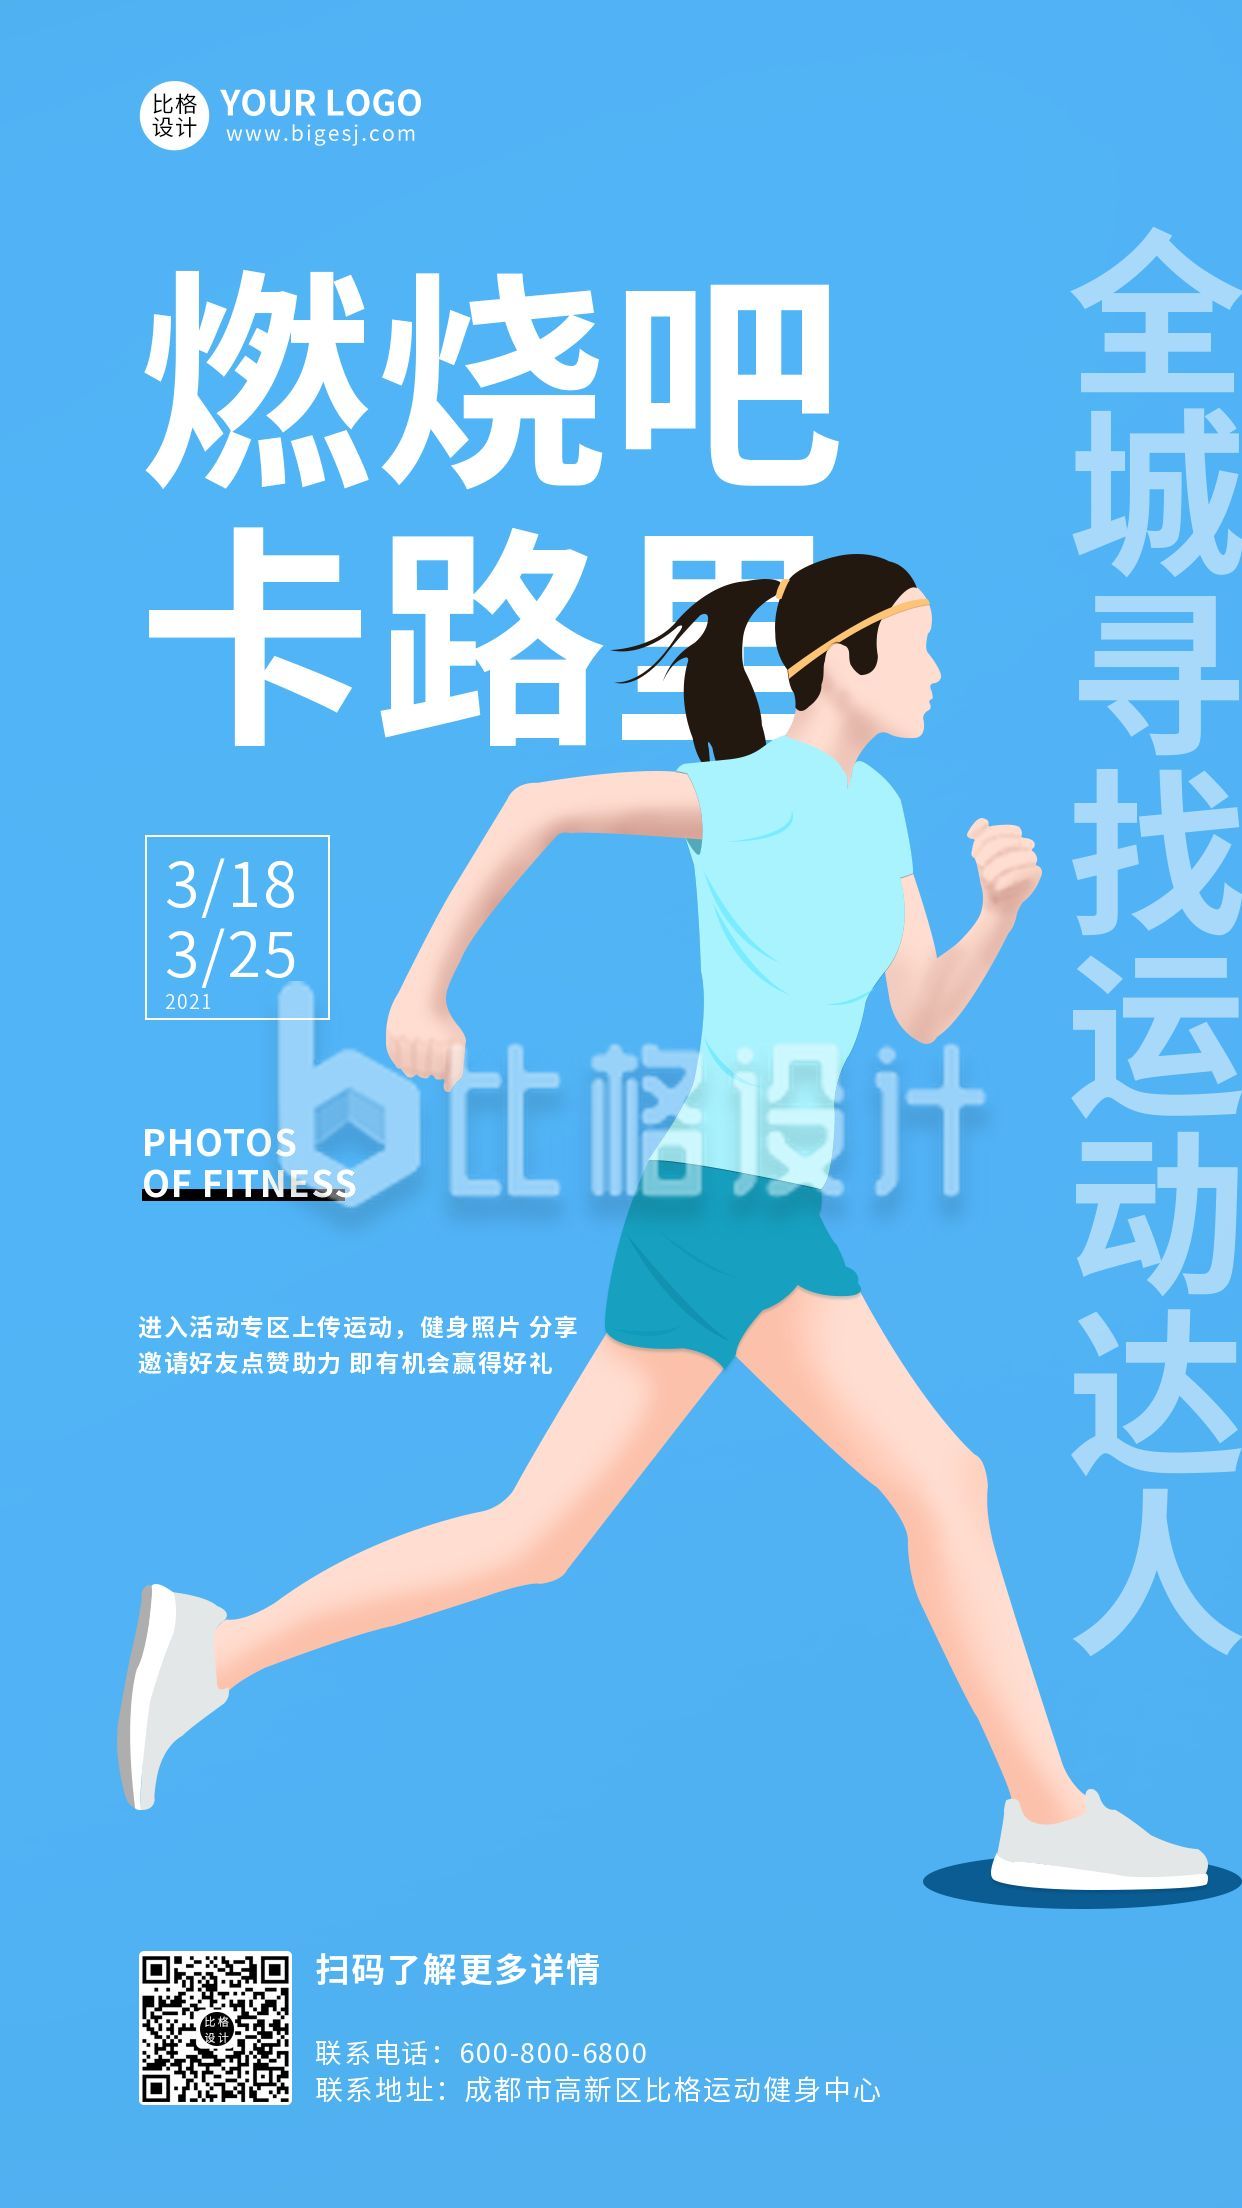 蓝色减肥活动健身跑步运动手机海报